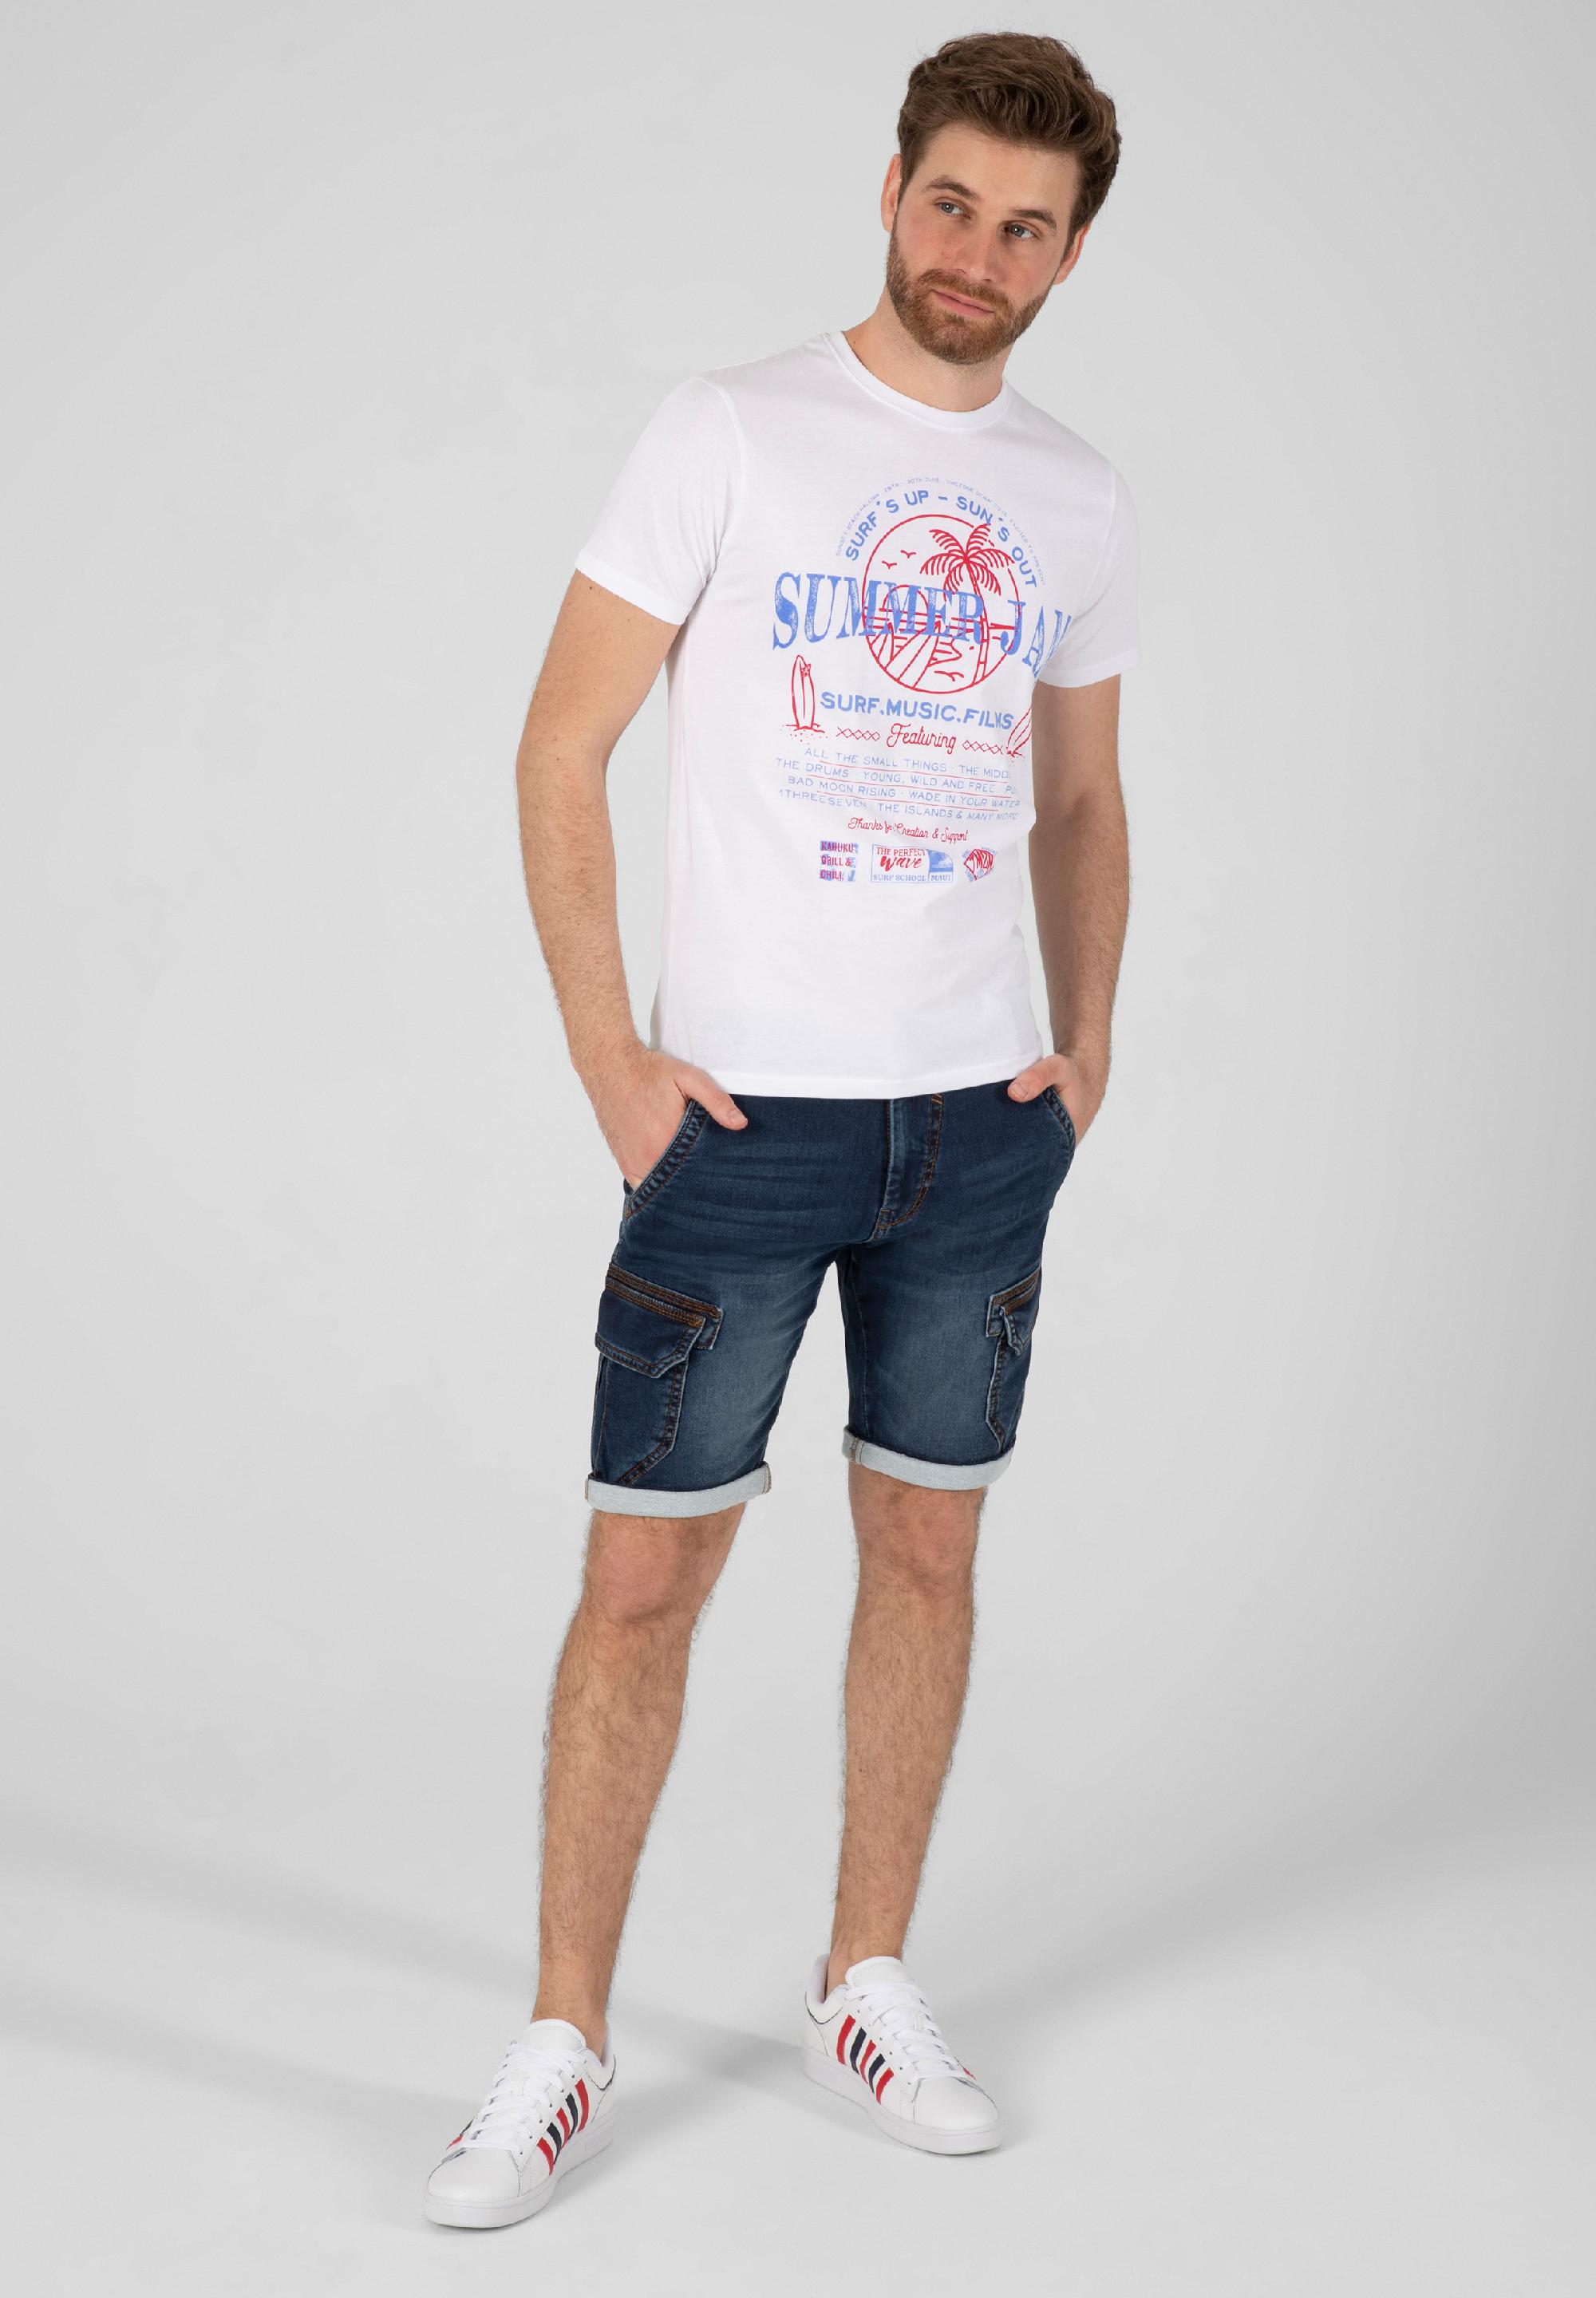 Summer Jam T-Shirt print